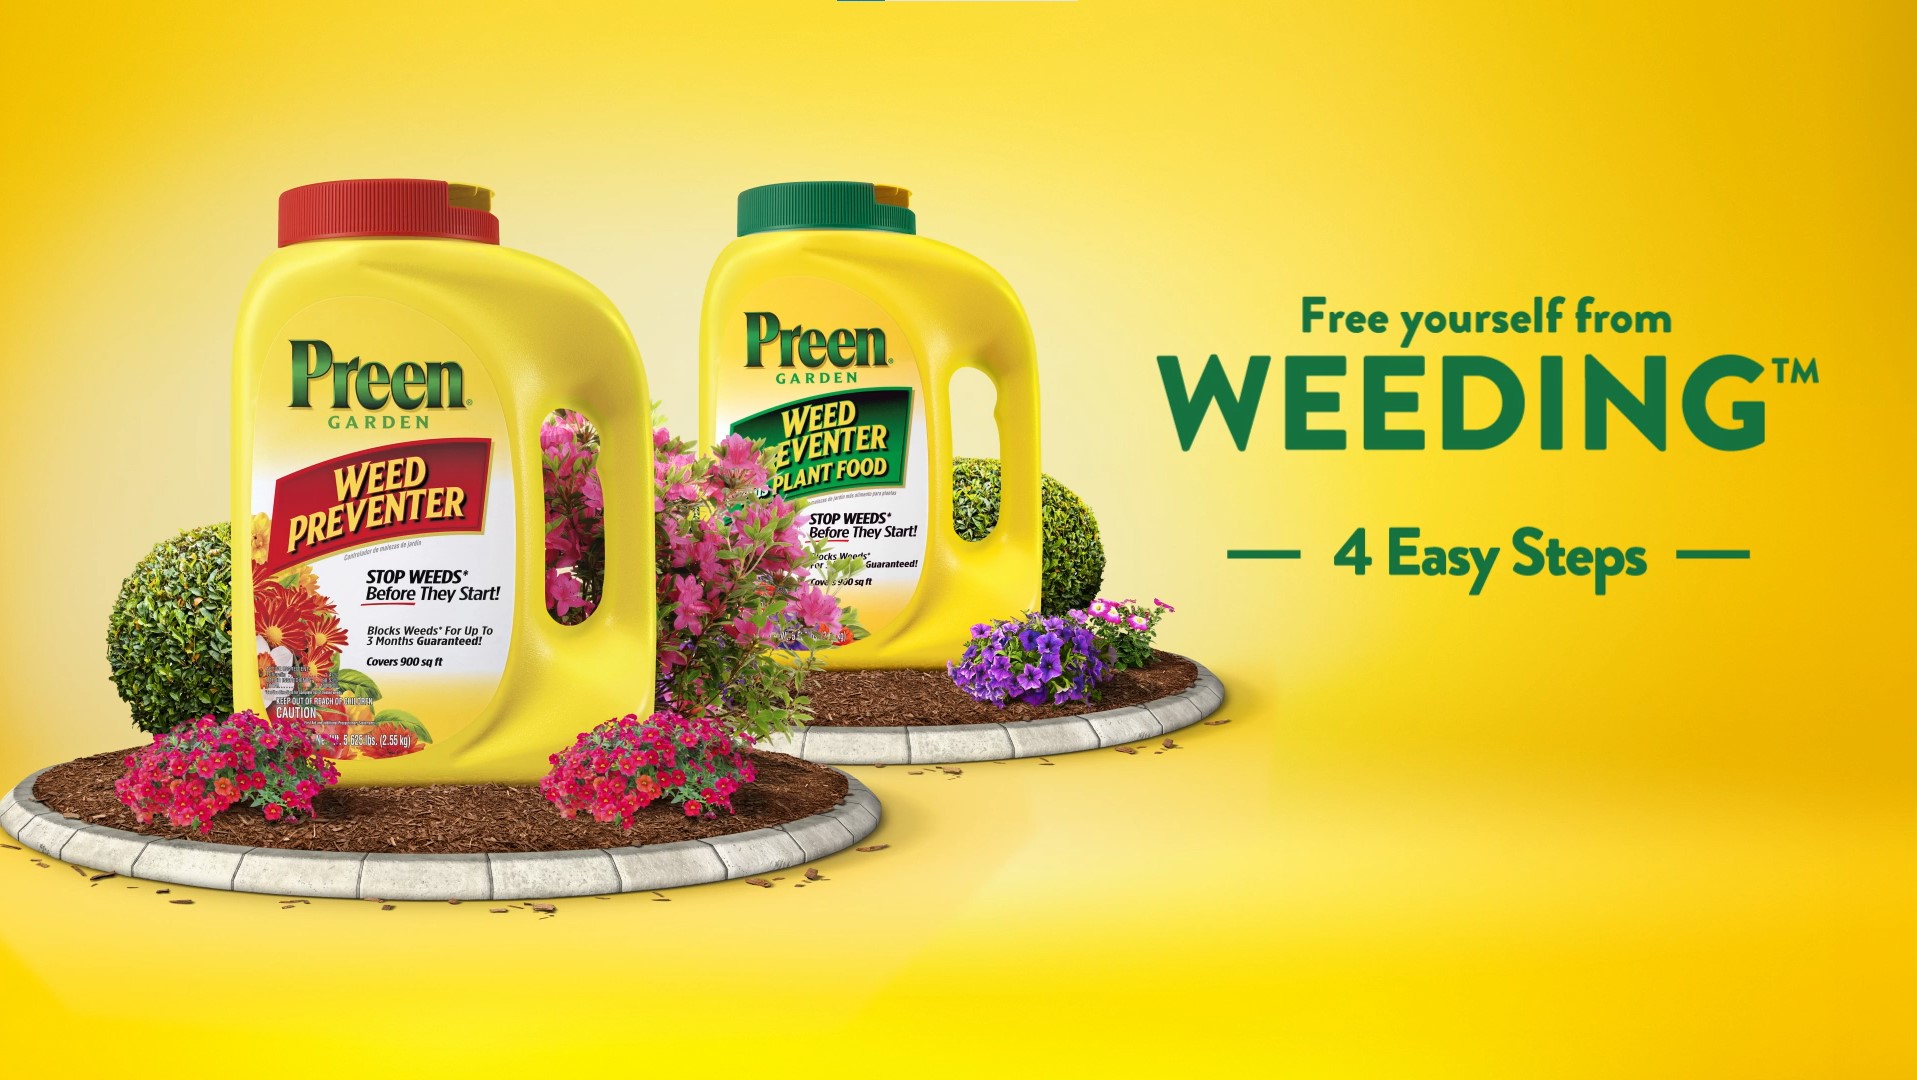 preen-garden-weed-preventer-16-lbs-at-menards